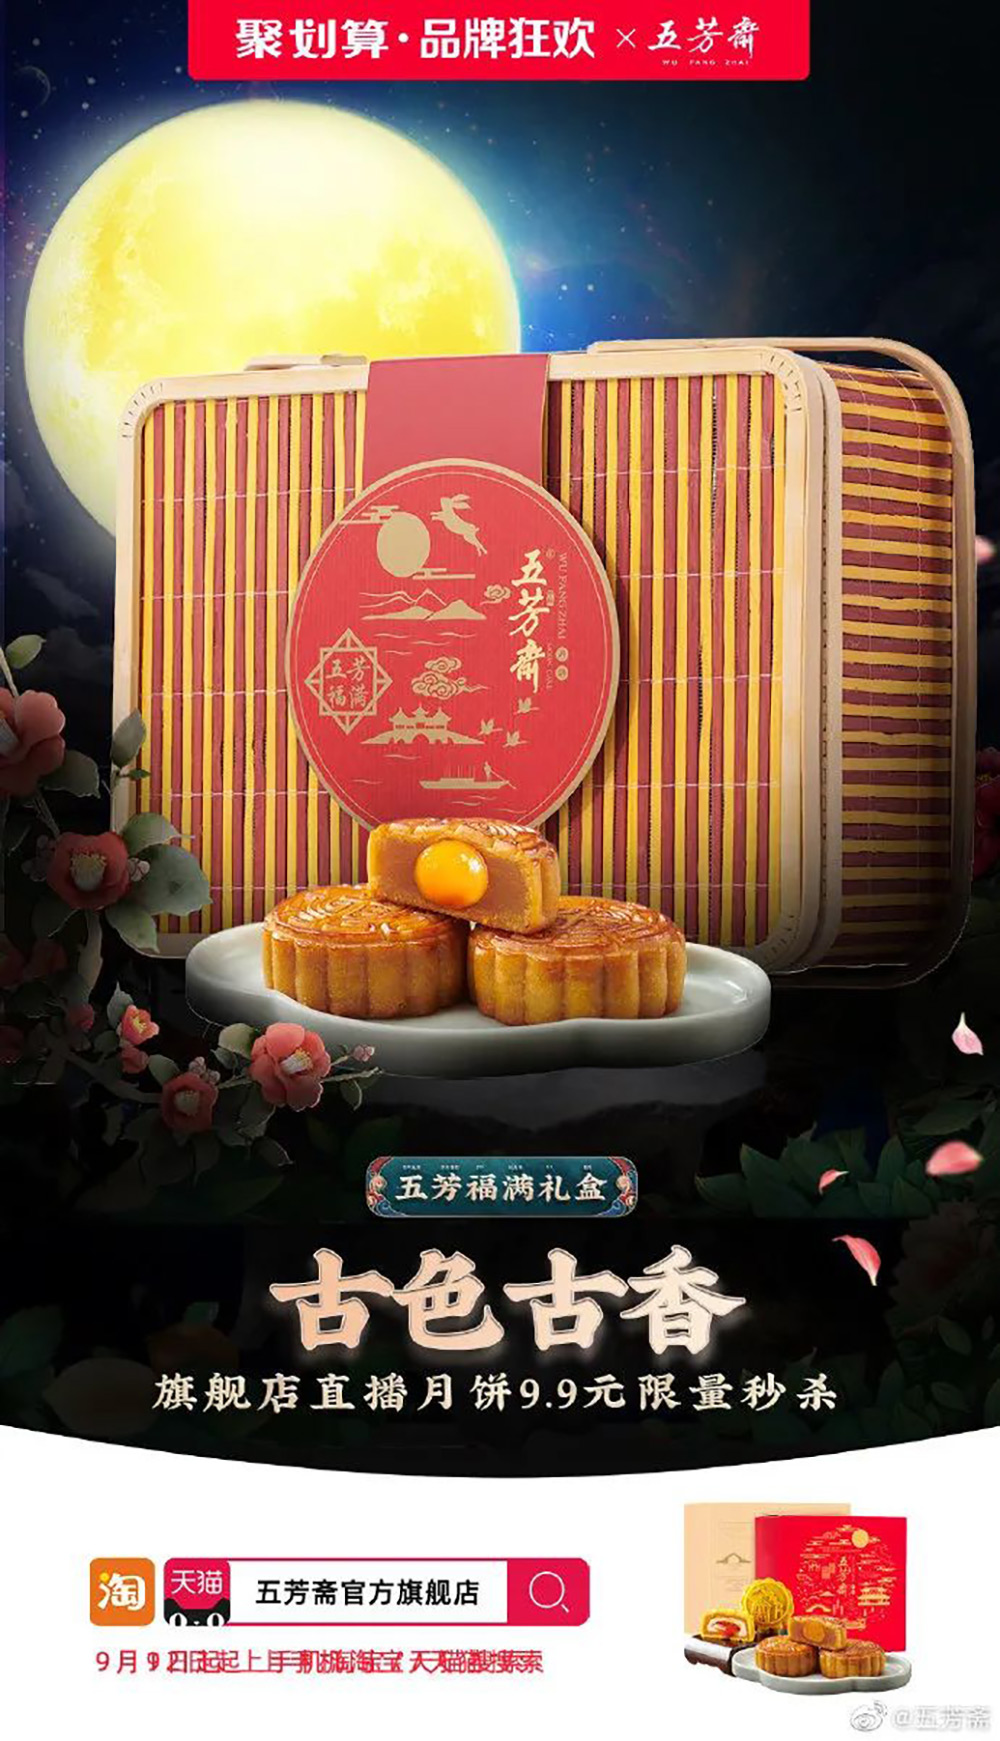 五芳斋食物主题的营销海报设计